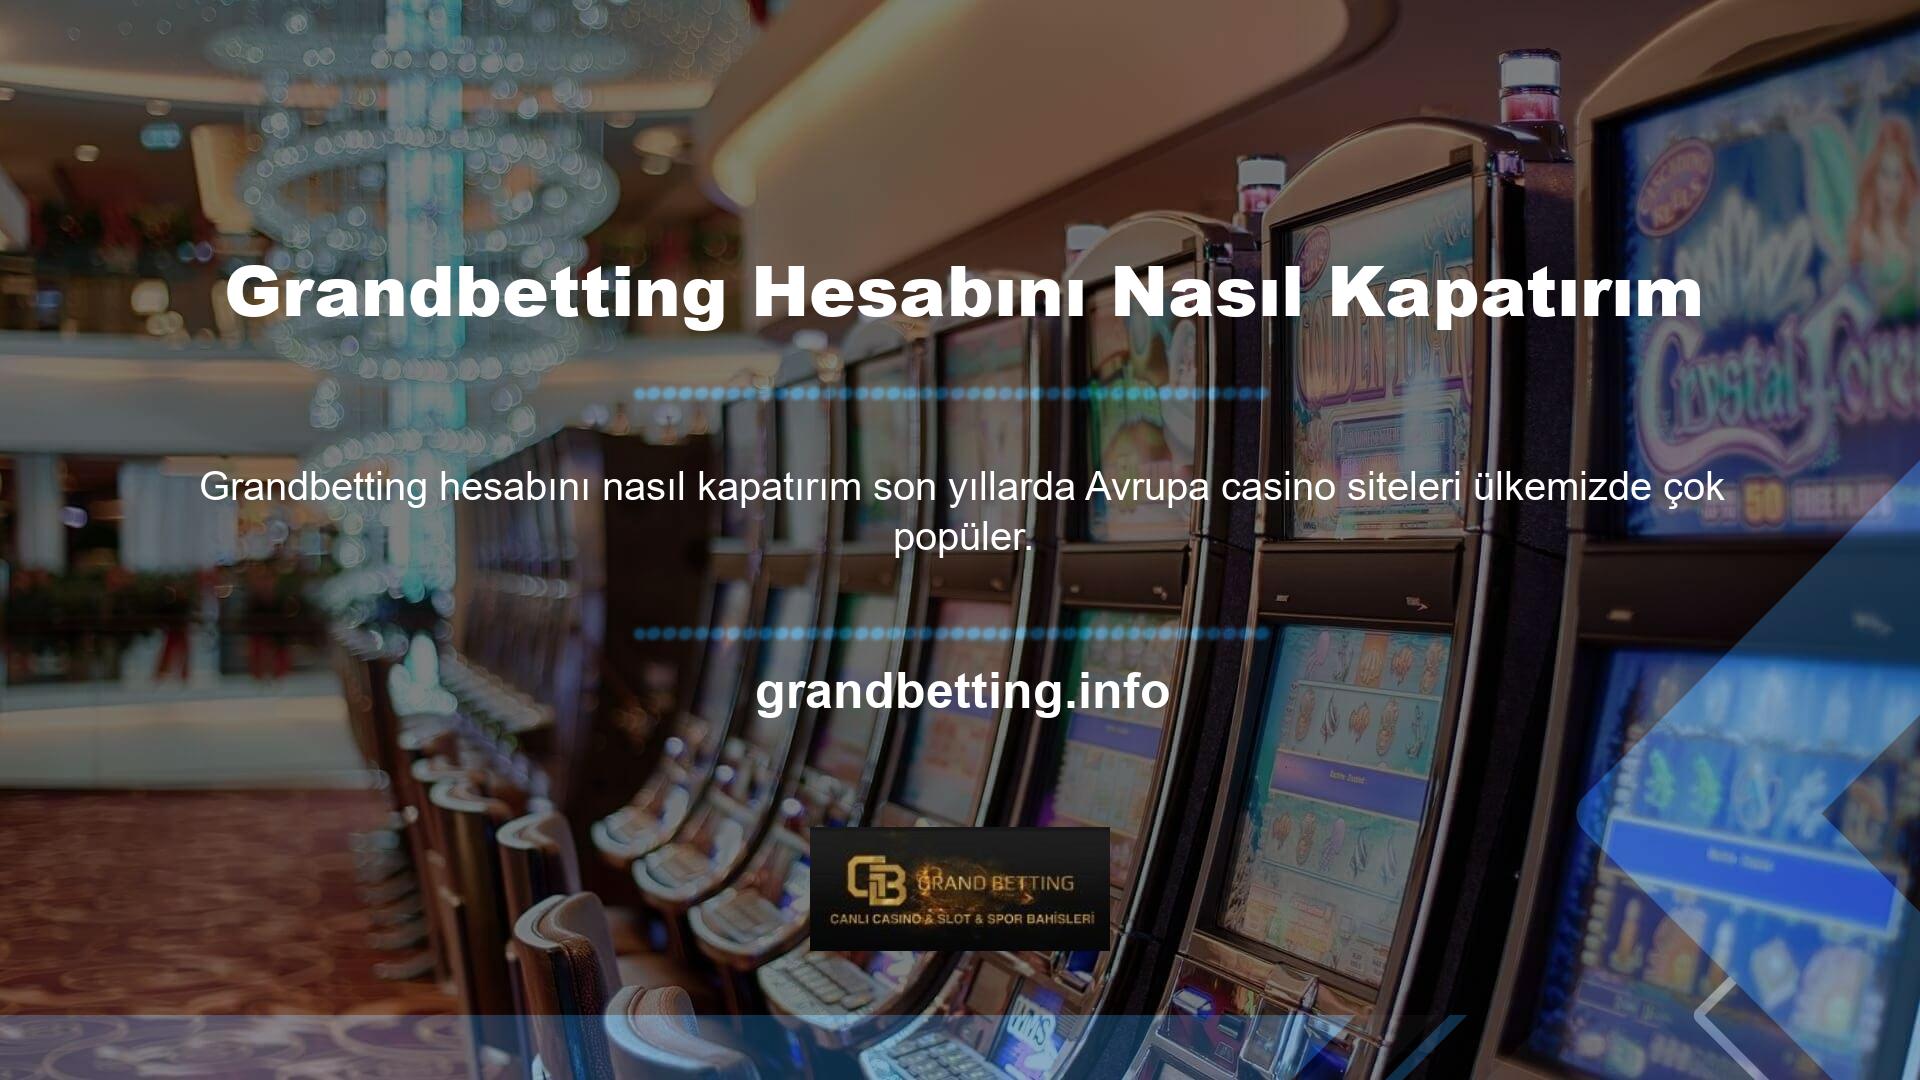 Grandbetting hesabı nasıl kapatılır da casino severlerin merak ettiği konulardan biridir? Bu merak edilen konular hakkında bilgi paylaşmak istiyoruz